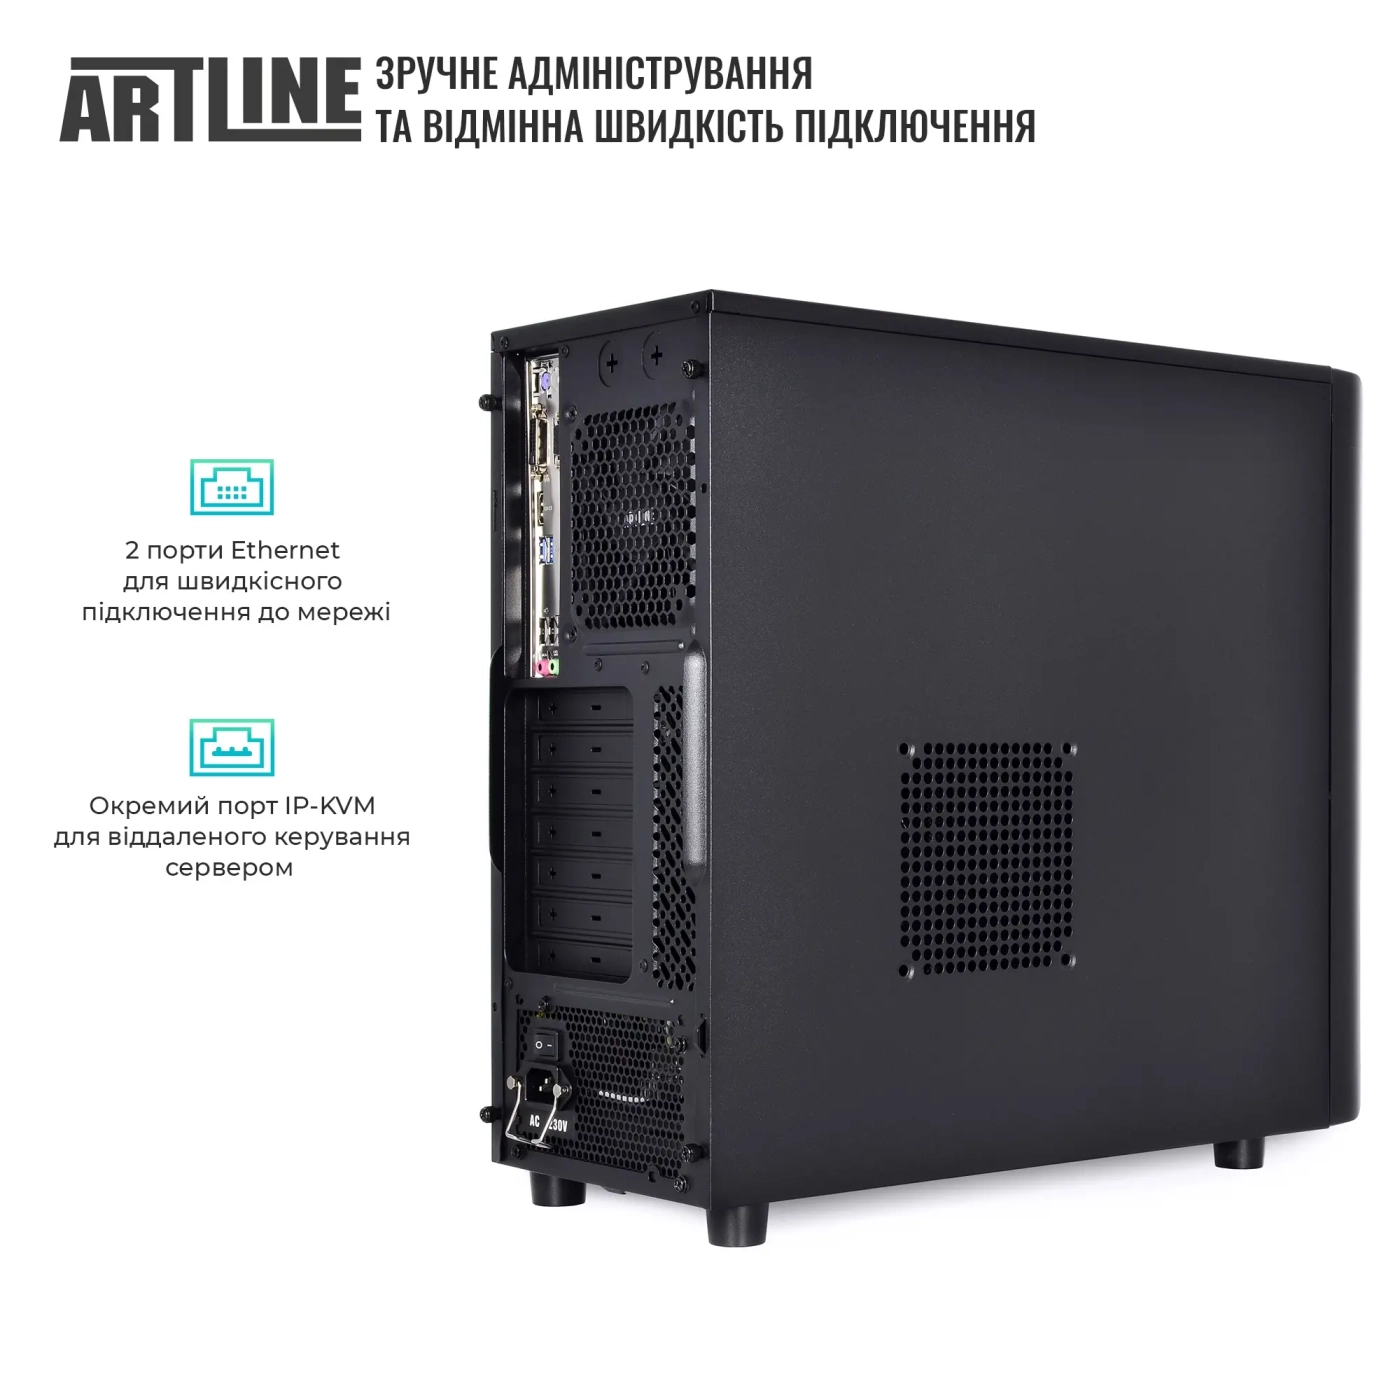 Купить Сервер ARTLINE Business T36 (T36v25) - фото 4